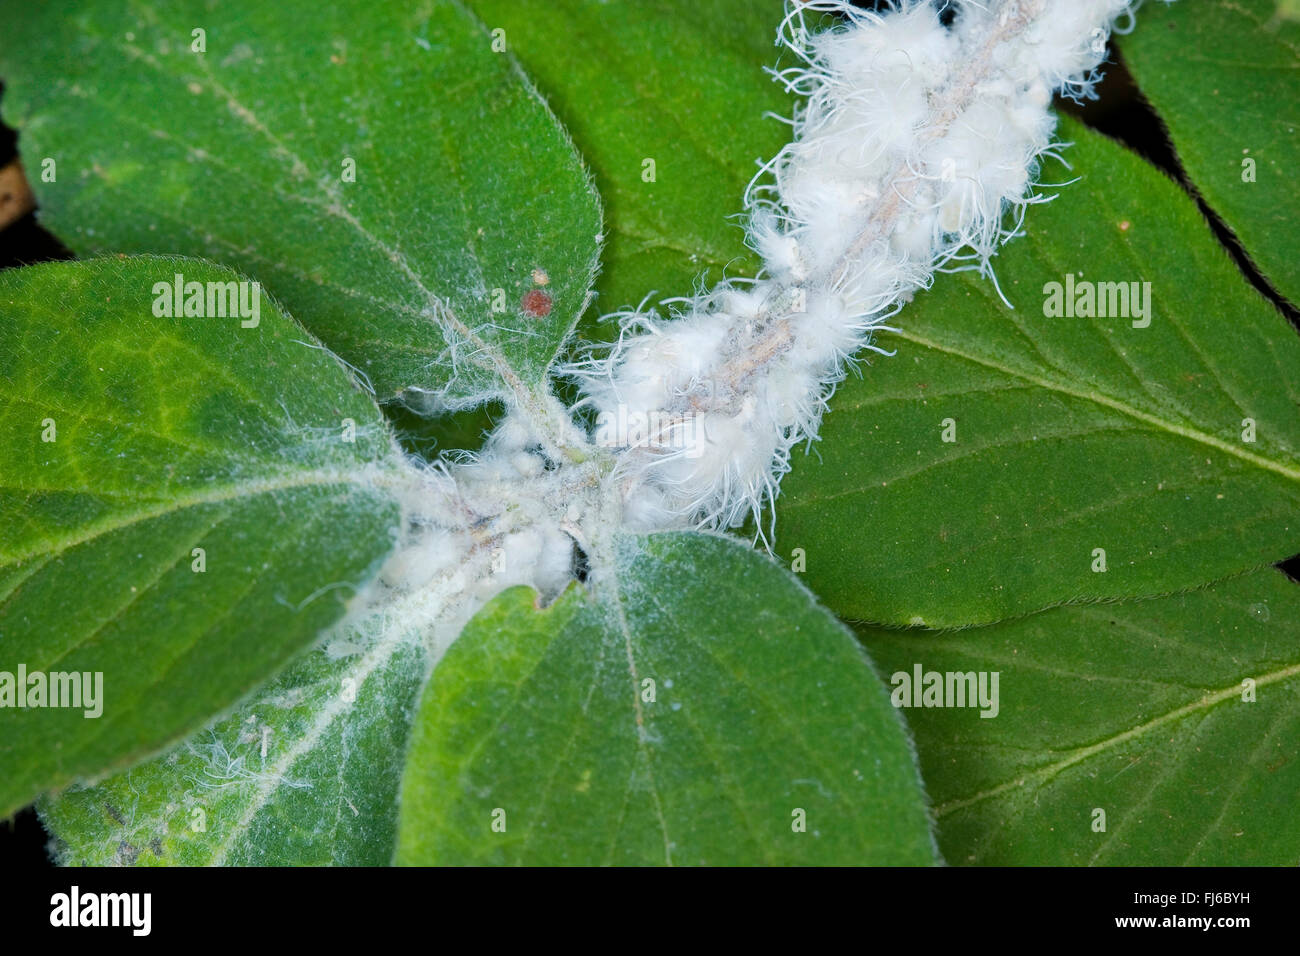 mealybugs (Pseudococcidae), mealybug at a Lonicera, Germany Stock Photo